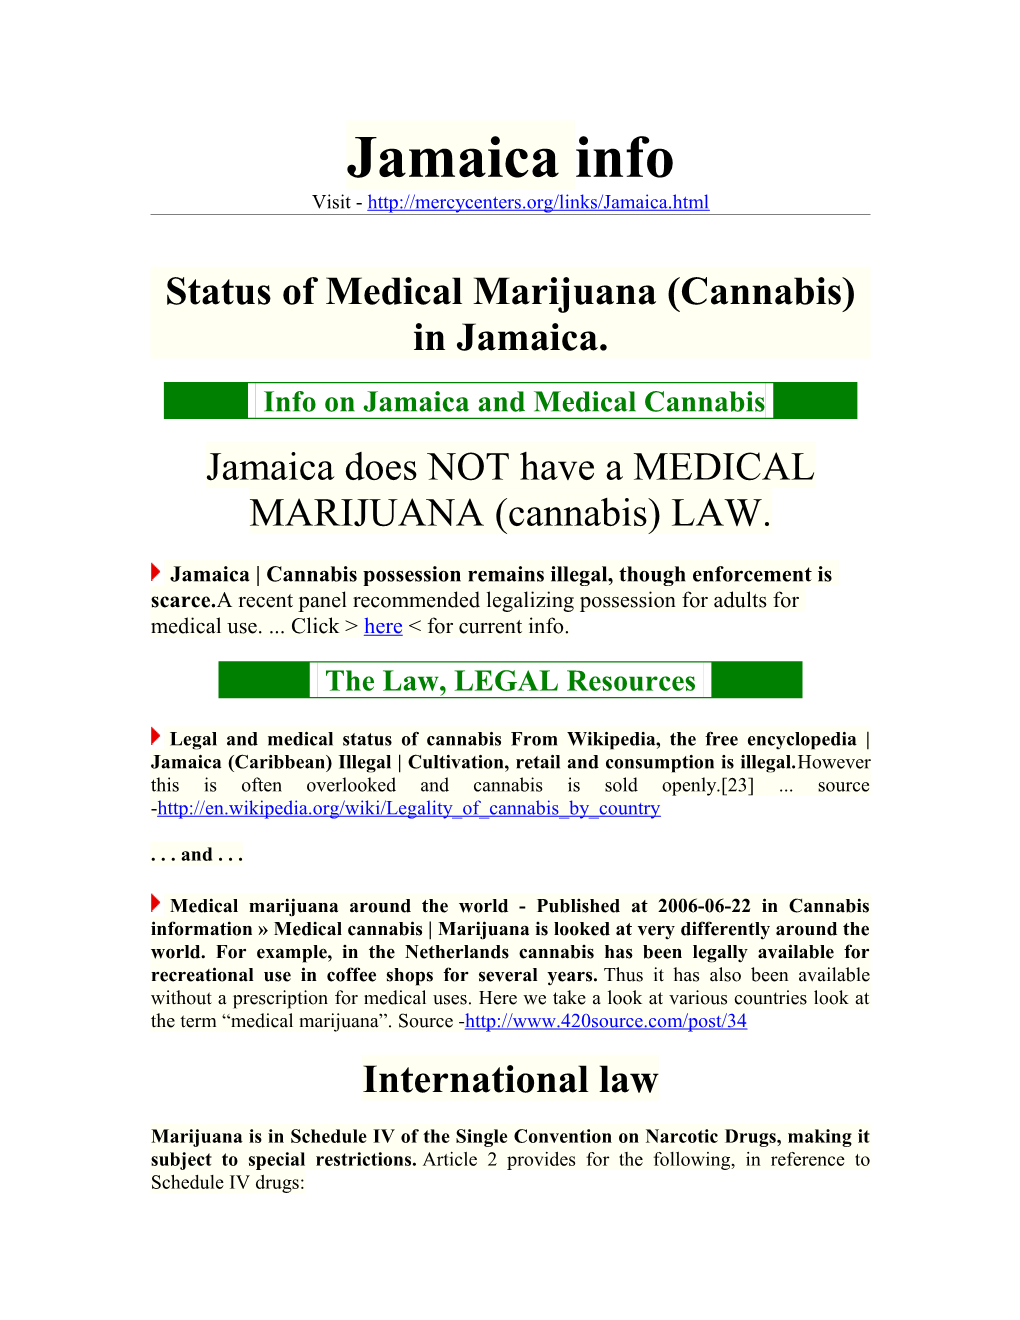 Status of Medical Marijuana (Cannabis) in Jamaica